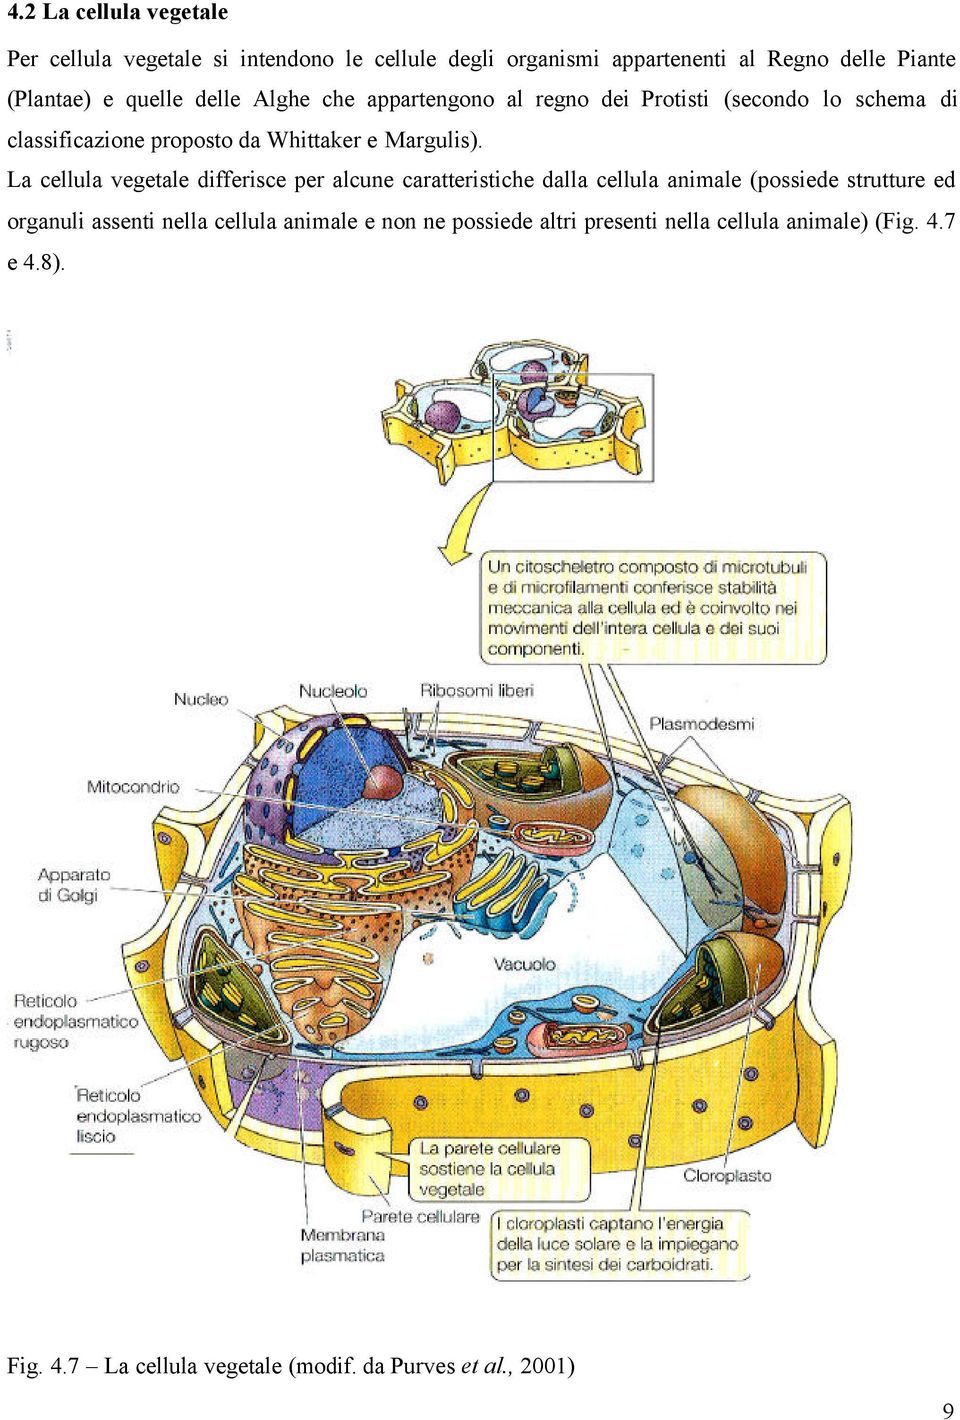 La cellula vegetale differisce per alcune caratteristiche dalla cellula animale (possiede strutture ed organuli assenti nella cellula